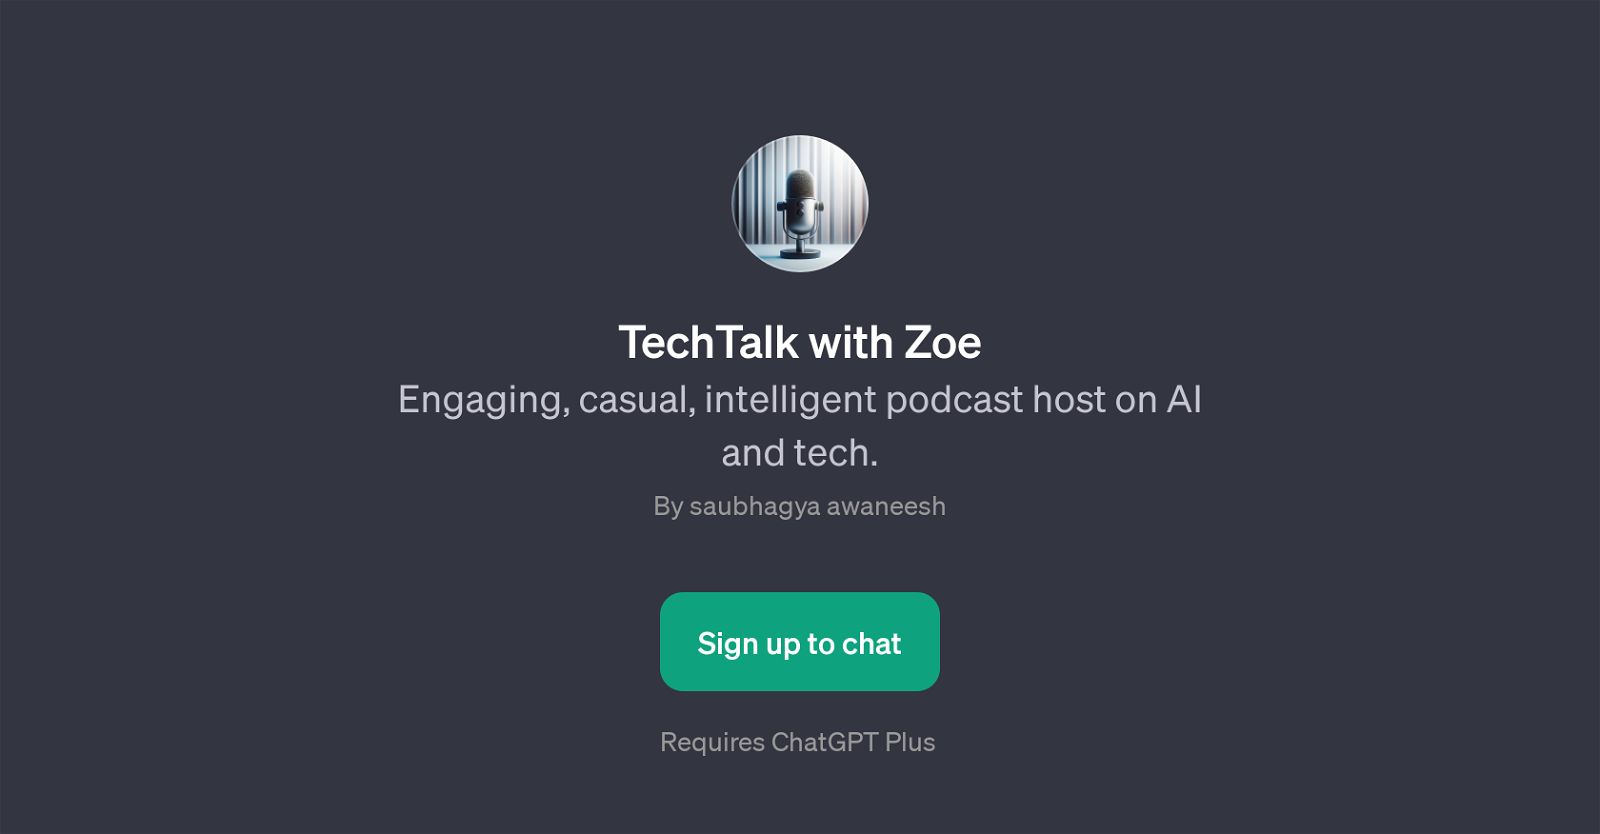 TechTalk with Zoe website